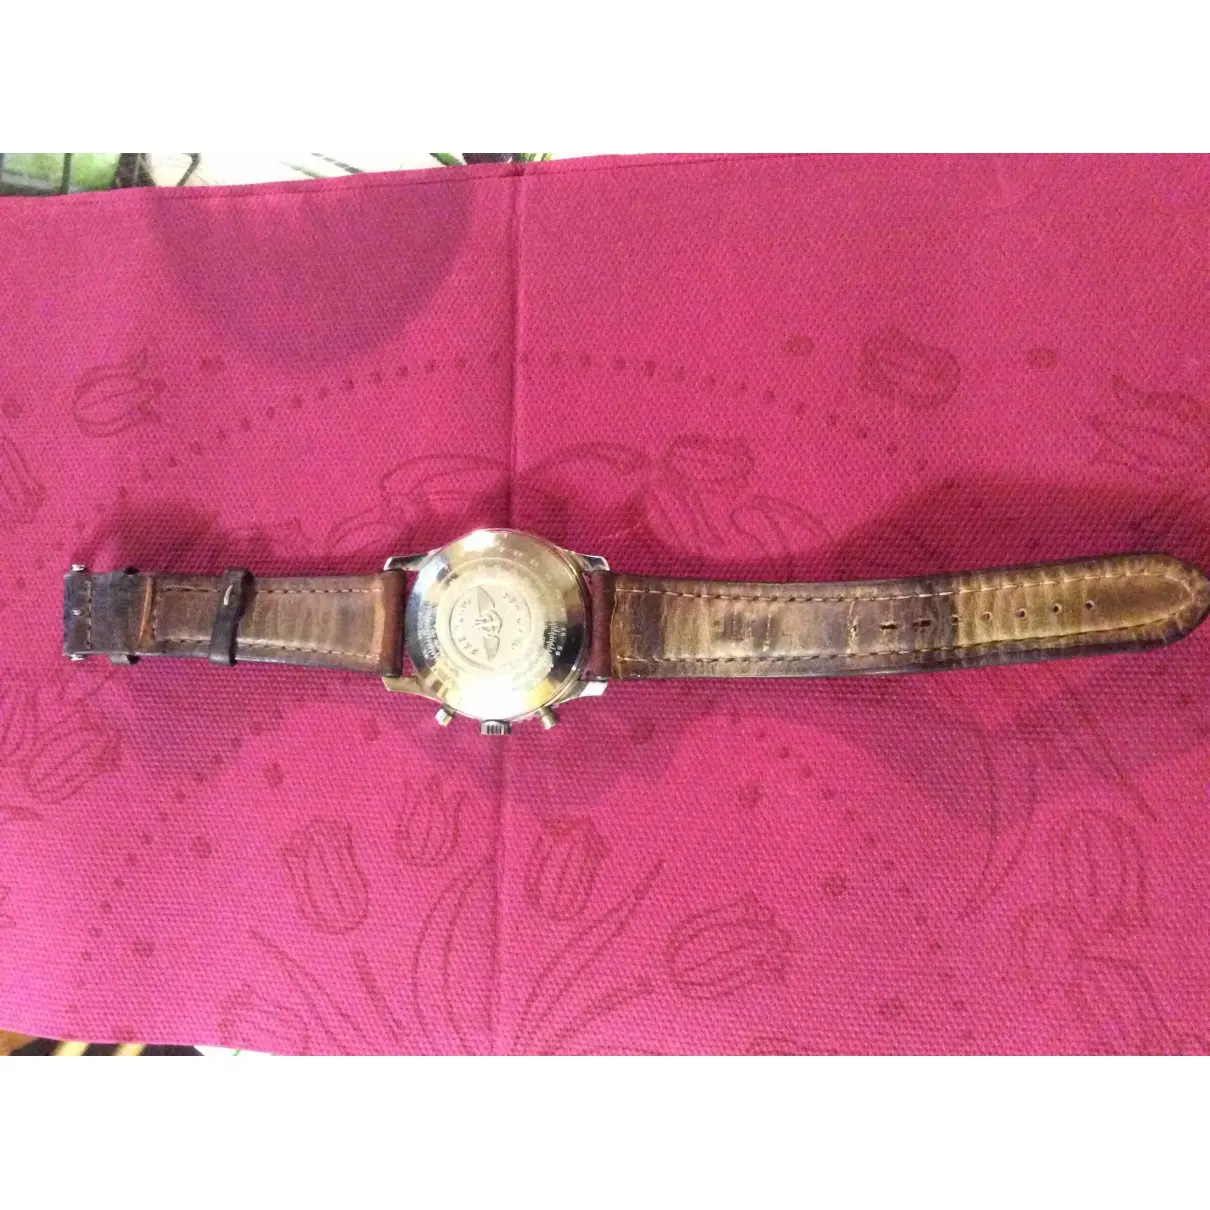 Breitling Navitimer watch for sale - Vintage